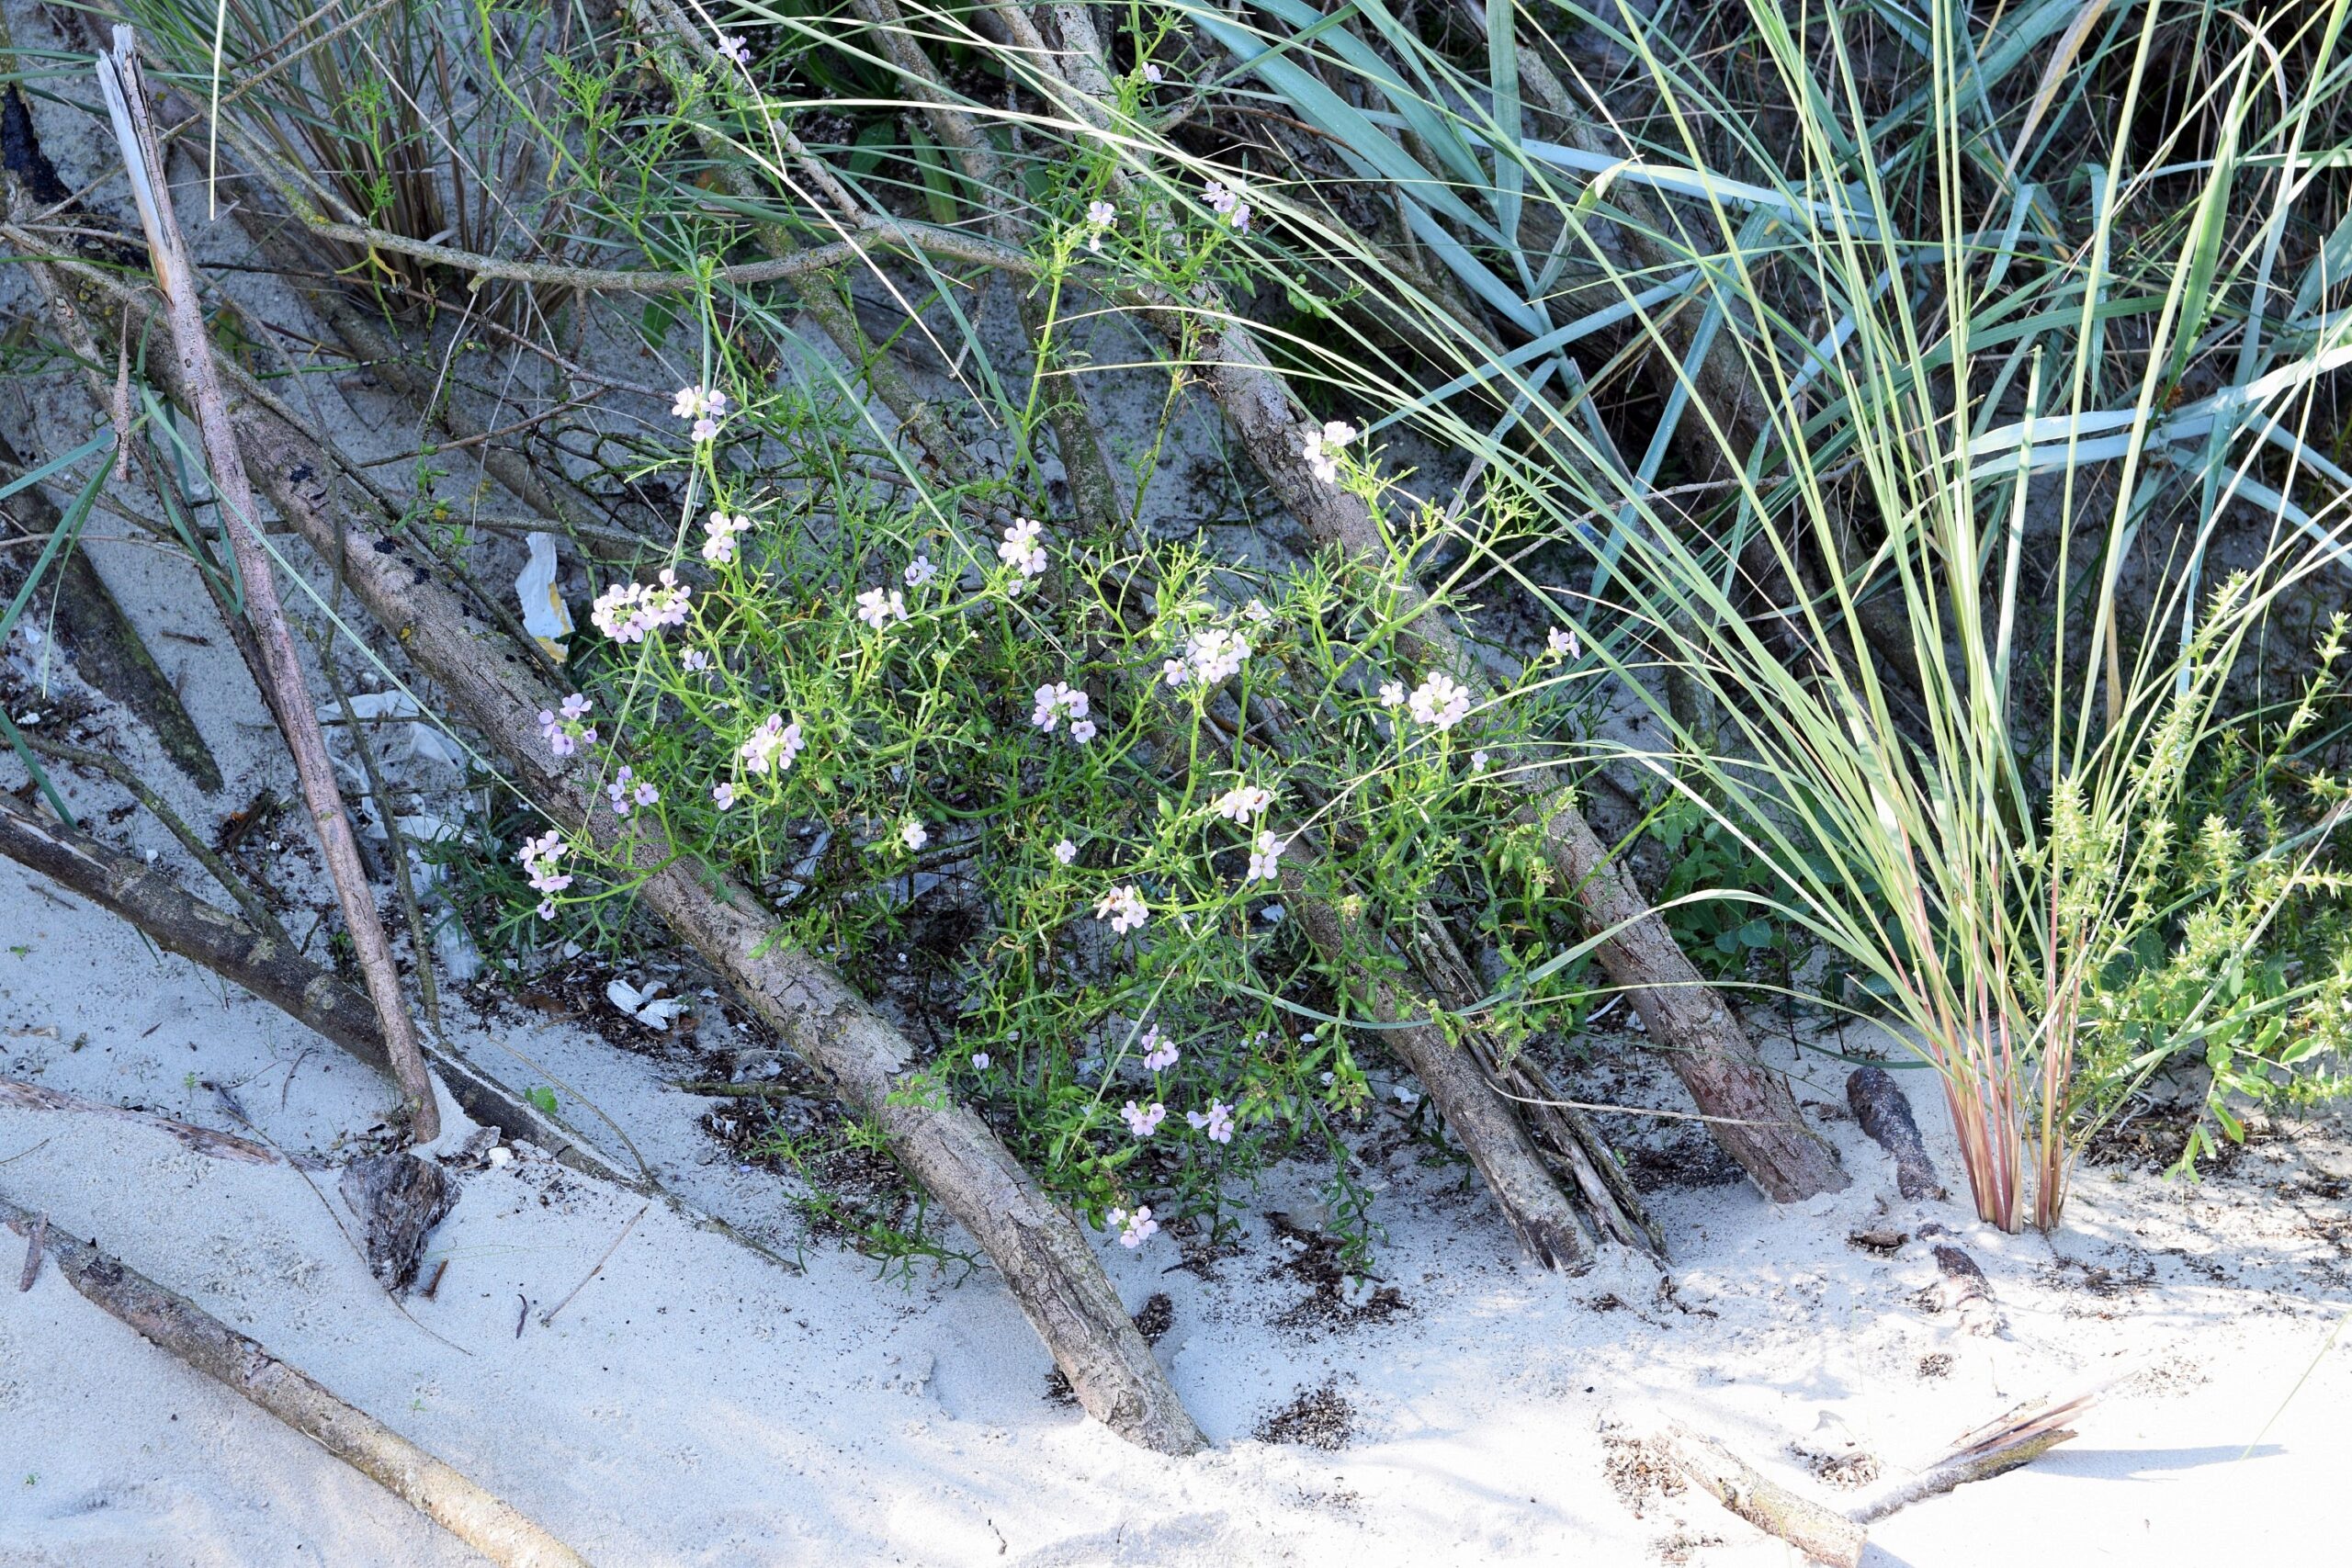 Zdjęcie kwitnącej rukwieli nadmorskiej u podnóża zniszczonej wydmy. Widoczne również trawy wydmowe oraz solanka kolczysta.